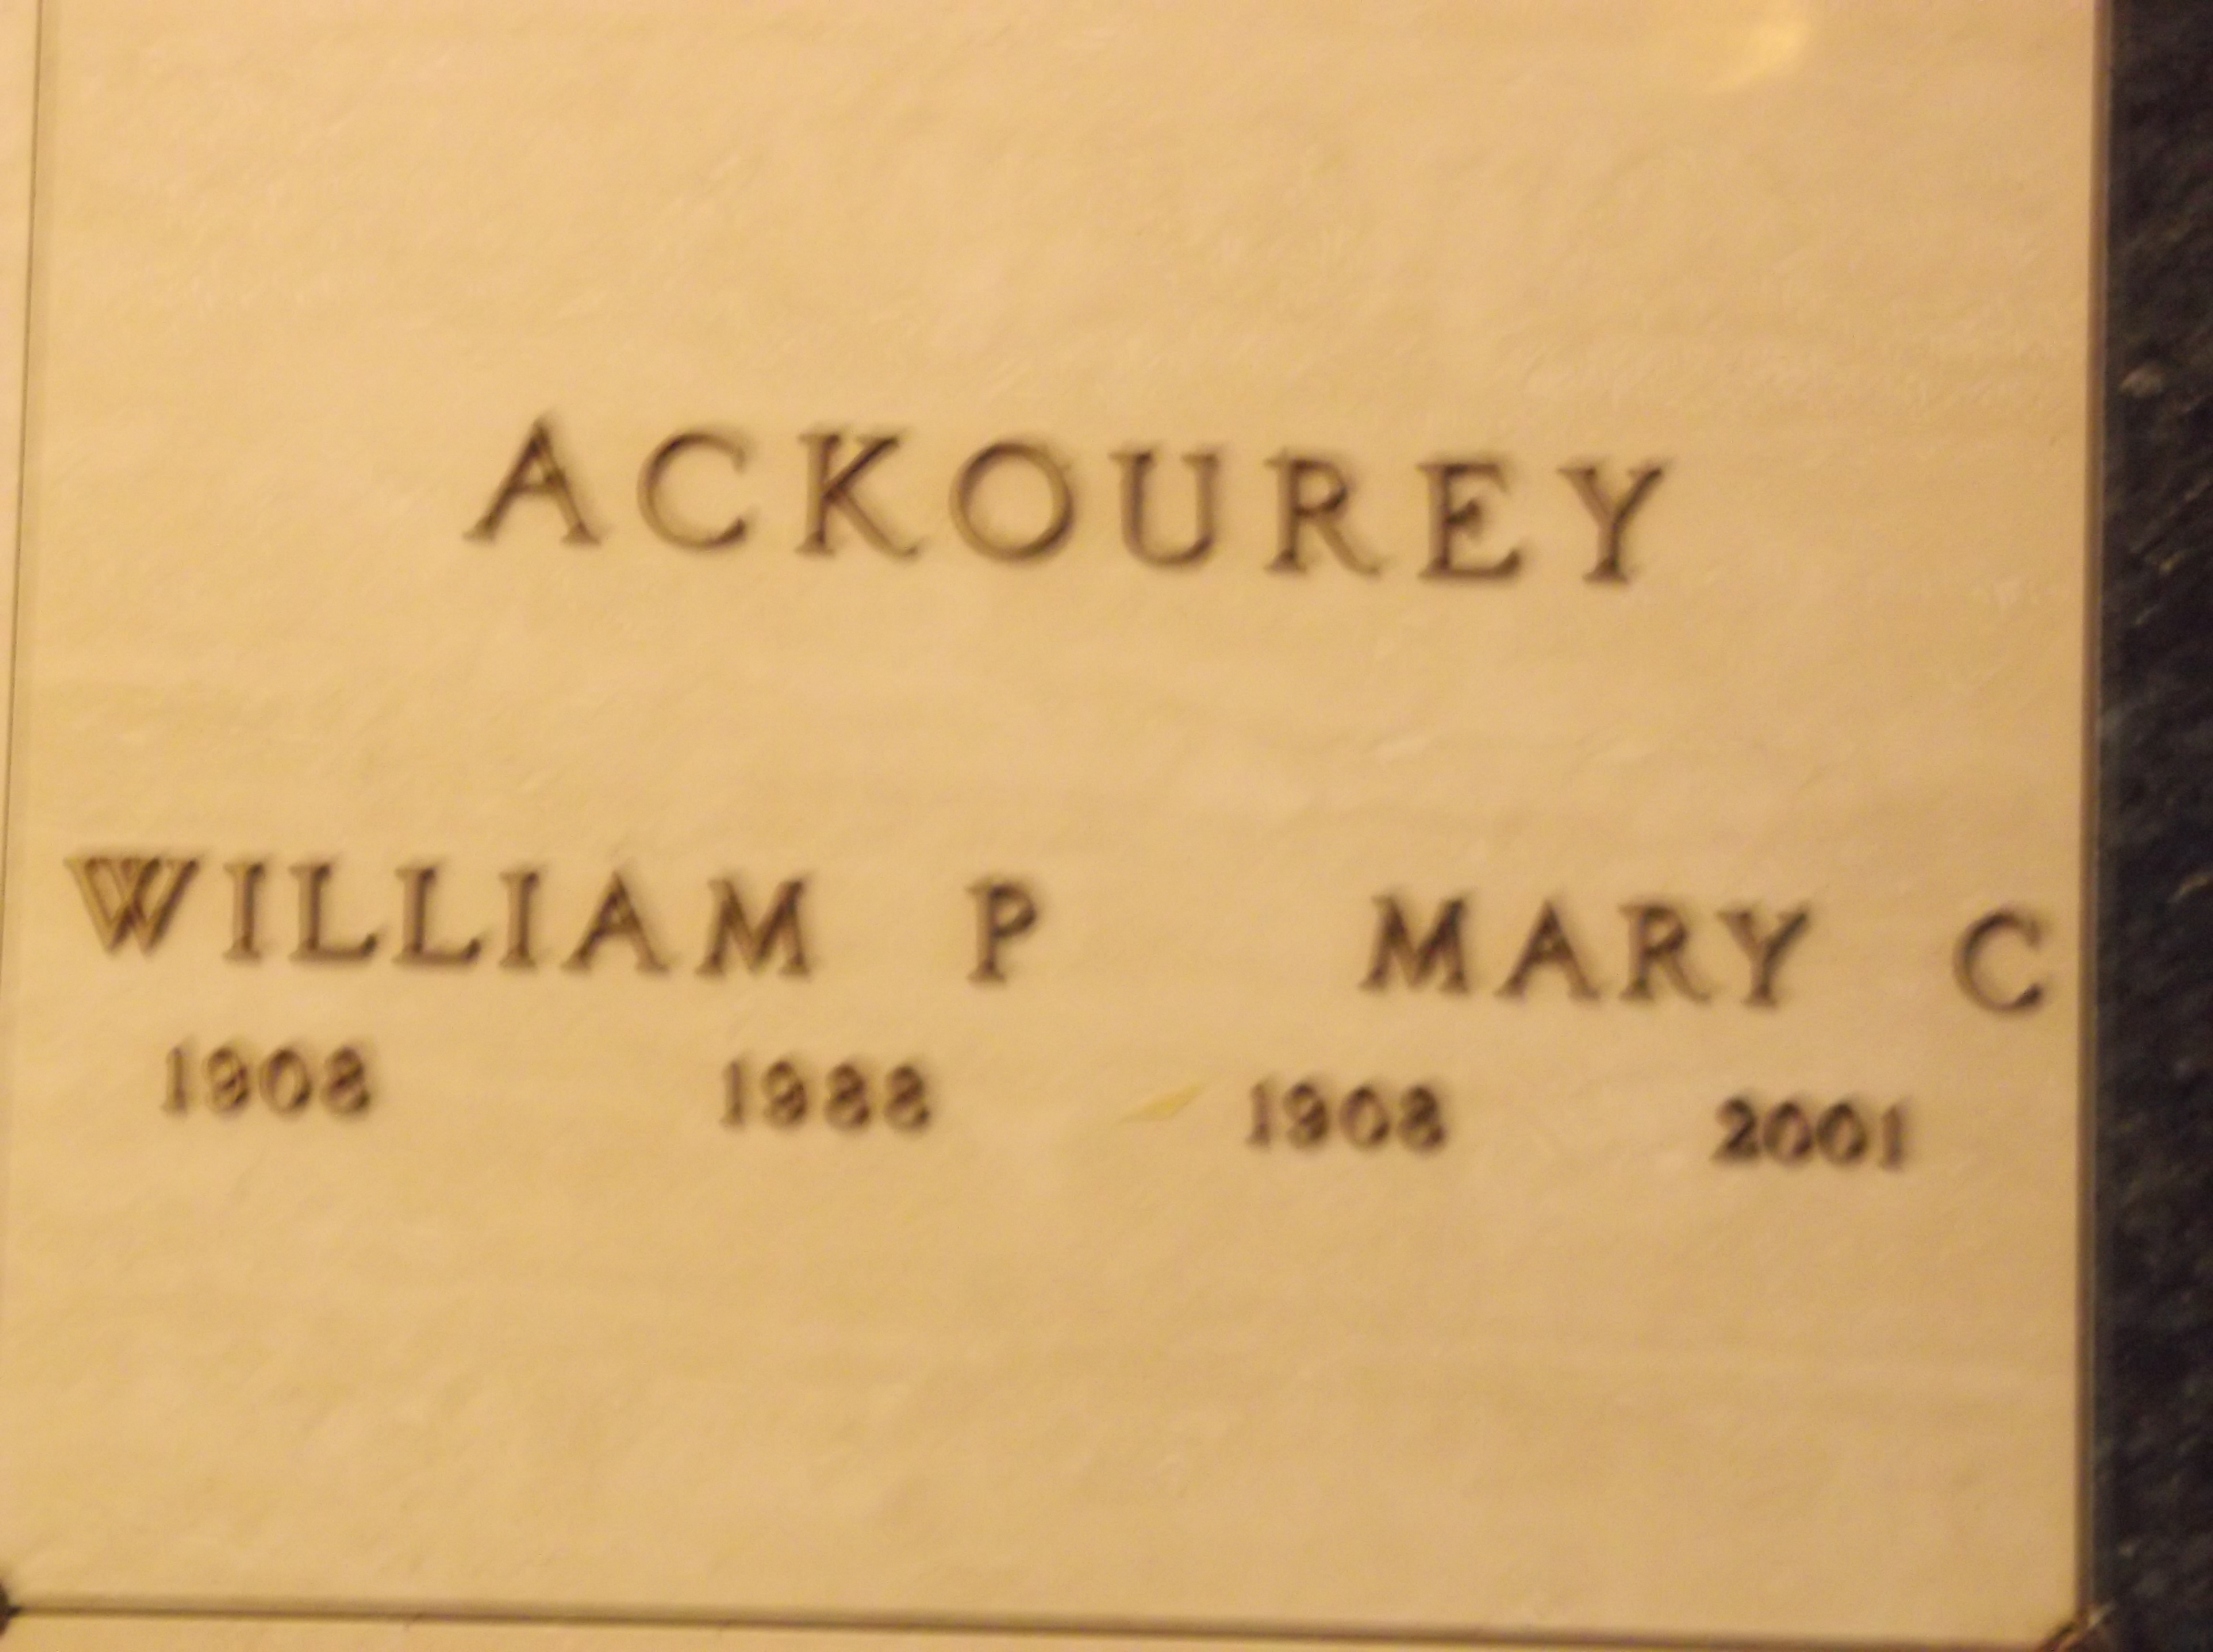 William P Ackourey